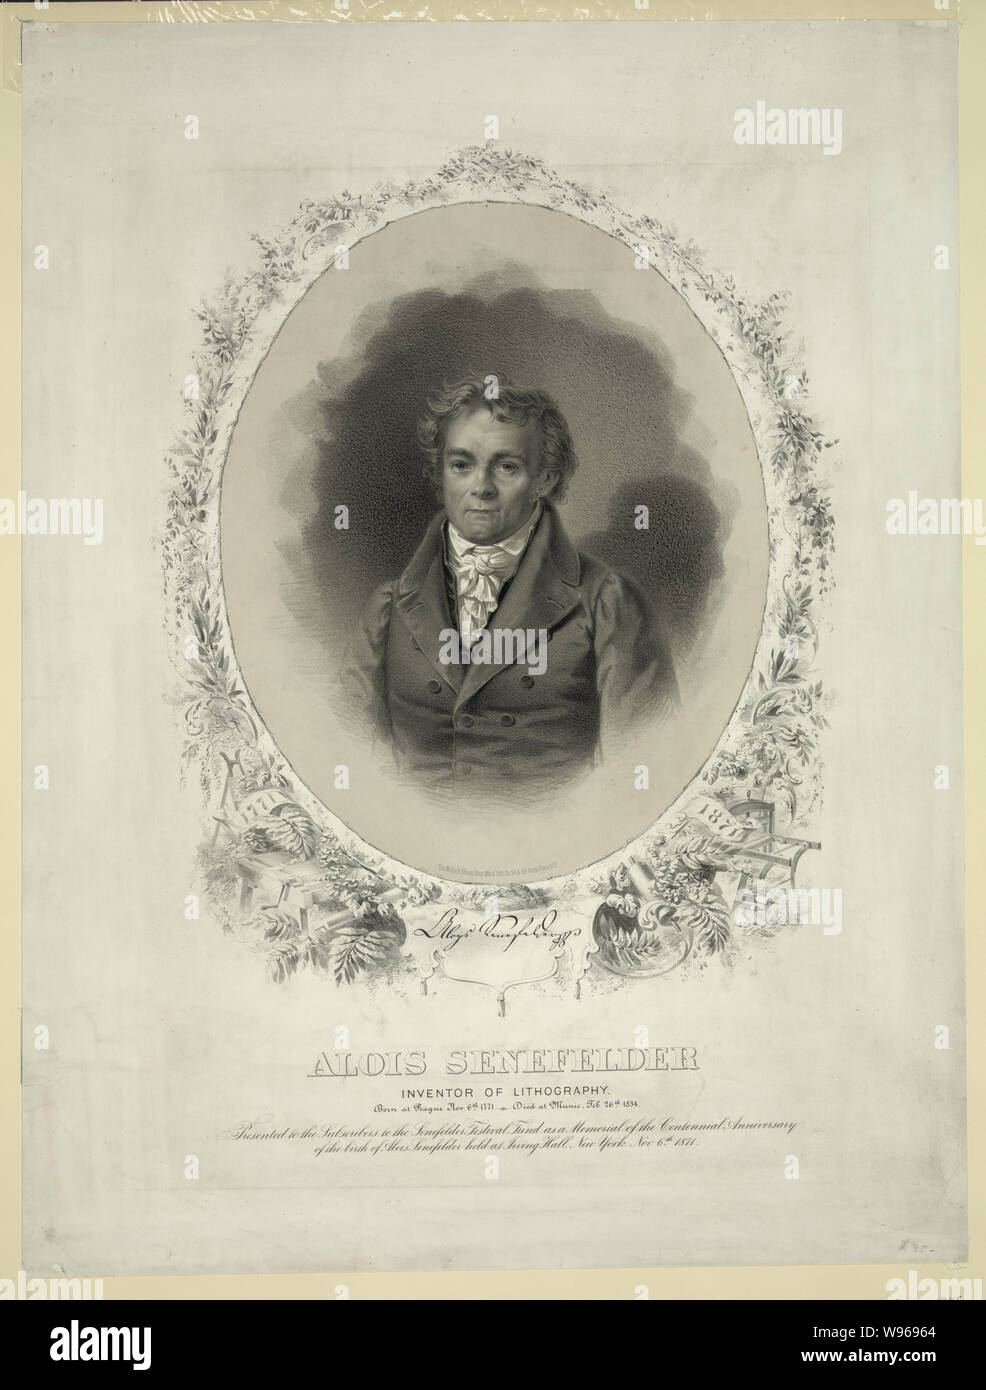 Alois Senefelder inventor of lithography Stock Photo